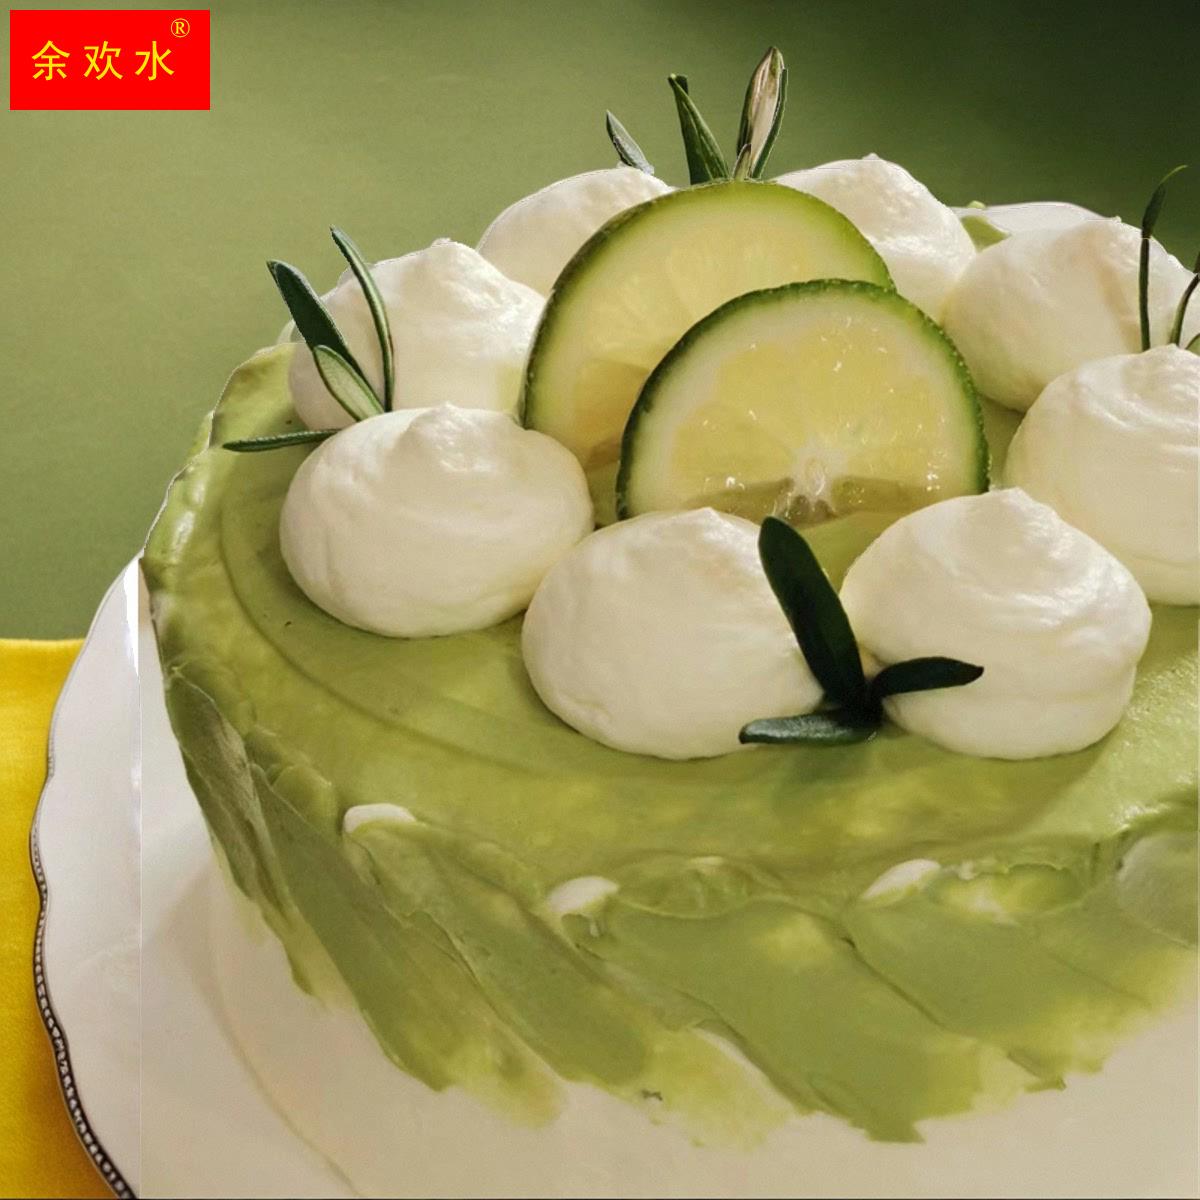 Mcake茶 · 漾 生日蛋糕抹茶奶油芝士蛋糕 官网配送上海北京苏州